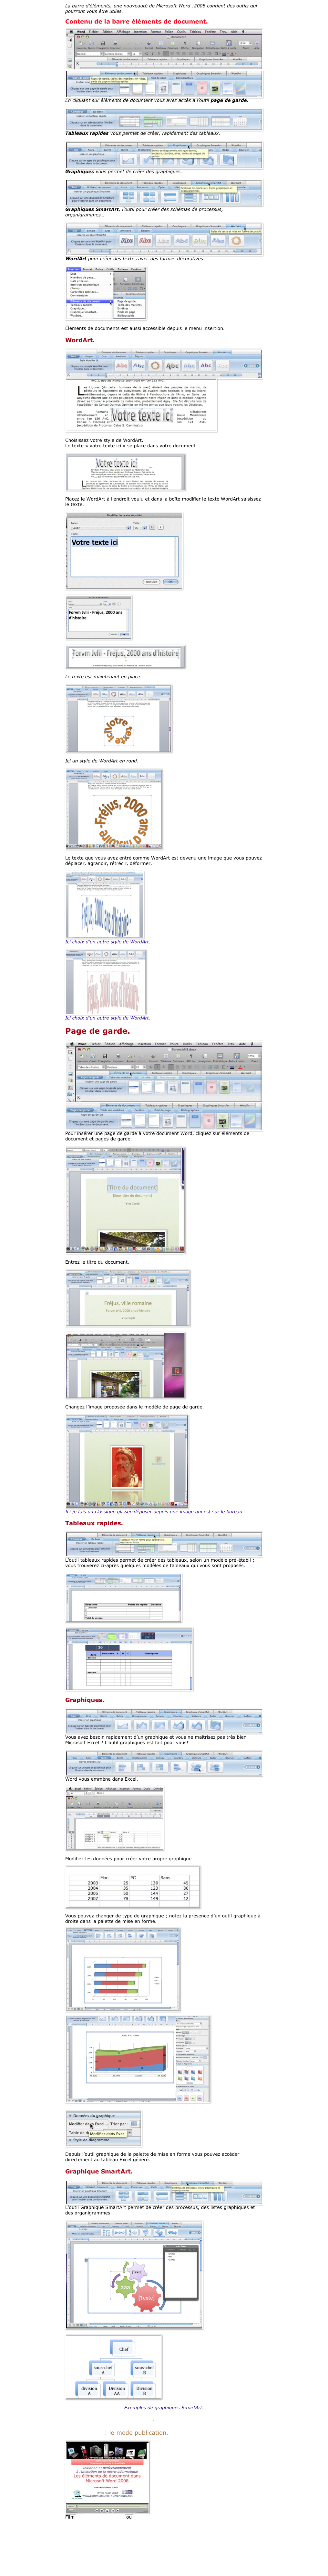 La barre d’éléments, une nouveauté de Microsoft Word :2008 contient des outils qui pourront vous être utiles.

Contenu de la barre éléments de document.

￼
￼En cliquant sur éléments de document vous avez accès à l’outil page de garde.

￼Tableaux rapides vous permet de créer, rapidement des tableaux.

￼Graphiques vous permet de créer des graphiques.

￼Graphiques SmartArt, l’outil pour créer des schémas de processus, organigrammes…

￼WordArt pour créer des textes avec des formes décoratives.

￼

Éléments de documents est aussi accessible depuis le menu insertion.

WordArt.

￼
￼

Choisissez votre style de WordArt.
Le texte « votre texte ici » se place dans votre document.

￼

Placez le WordArt à l’endroit voulu et dans la boîte modifier le texte WordArt saisissez le texte.

￼

￼

￼

Le texte est maintenant en place.

￼

Ici un style de WordArt en rond.

￼

Le texte que vous avez entré comme WordArt est devenu une image que vous pouvez déplacer, agrandir, rétrécir, déformer.

￼
Ici choix d’un autre style de WordArt.

￼
Ici choix d’un autre style de WordArt.

Page de garde.

￼
￼
Pour insérer une page de garde à votre document Word, cliquez sur éléments de document et pages de garde.

￼

Entrez le titre du document.

￼

￼

Changez l’image proposée dans le modèle de page de garde.

￼
Ici je fais un classique glisser-déposer depuis une image qui est sur le bureau.

Tableaux rapides.

￼
L’outil tableaux rapides permet de créer des tableaux, selon un modèle pré-établi ; vous trouverez ci-après quelques modèles de tableaux qui vous sont proposés.

￼

￼

Graphiques.

￼
Vous avez besoin rapidement d’un graphique et vous ne maîtrisez pas très bien Microsoft Excel ? L’outil graphiques est fait pour vous!

￼
Word vous emmène dans Excel.

￼

Modifiez les données pour créer votre propre graphique..

￼

Vous pouvez changer de type de graphique ; notez la présence d’un outil graphique à droite dans la palette de mise en forme.

￼

￼


￼

Depuis l’outil graphique de la palette de mise en forme vous pouvez accéder directement au tableau Excel généré.

Graphique SmartArt.

￼
L’outil Graphique SmartArt permet de créer des processus, des listes graphiques et des organigrammes.

￼

￼

Exemples de graphiques SmartArt.

Cette page est disponible en format PDF.

Pour suivre : le mode publication.

￼
Film en format .mov h264 ou sur YouTube 


